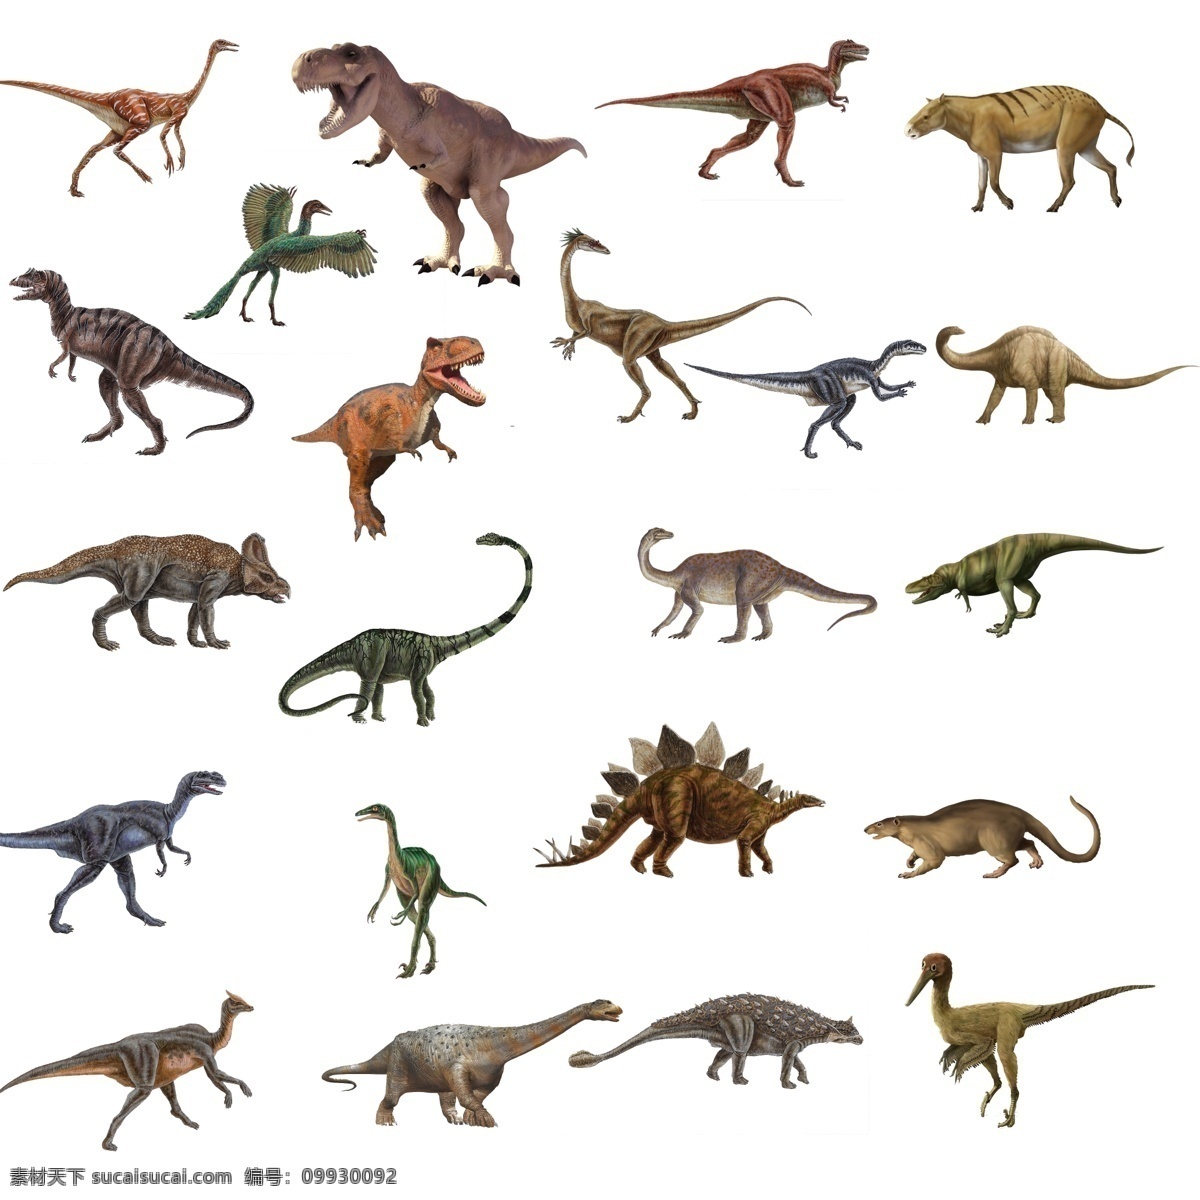 恐龙集合 恐龙 霸王龙 动物 古生物 剑龙 翼龙 中生代 新生代 恐龙化石 马 老鼠 始祖鸟 哺乳动物 矢量 动物剪影 分层 源文件